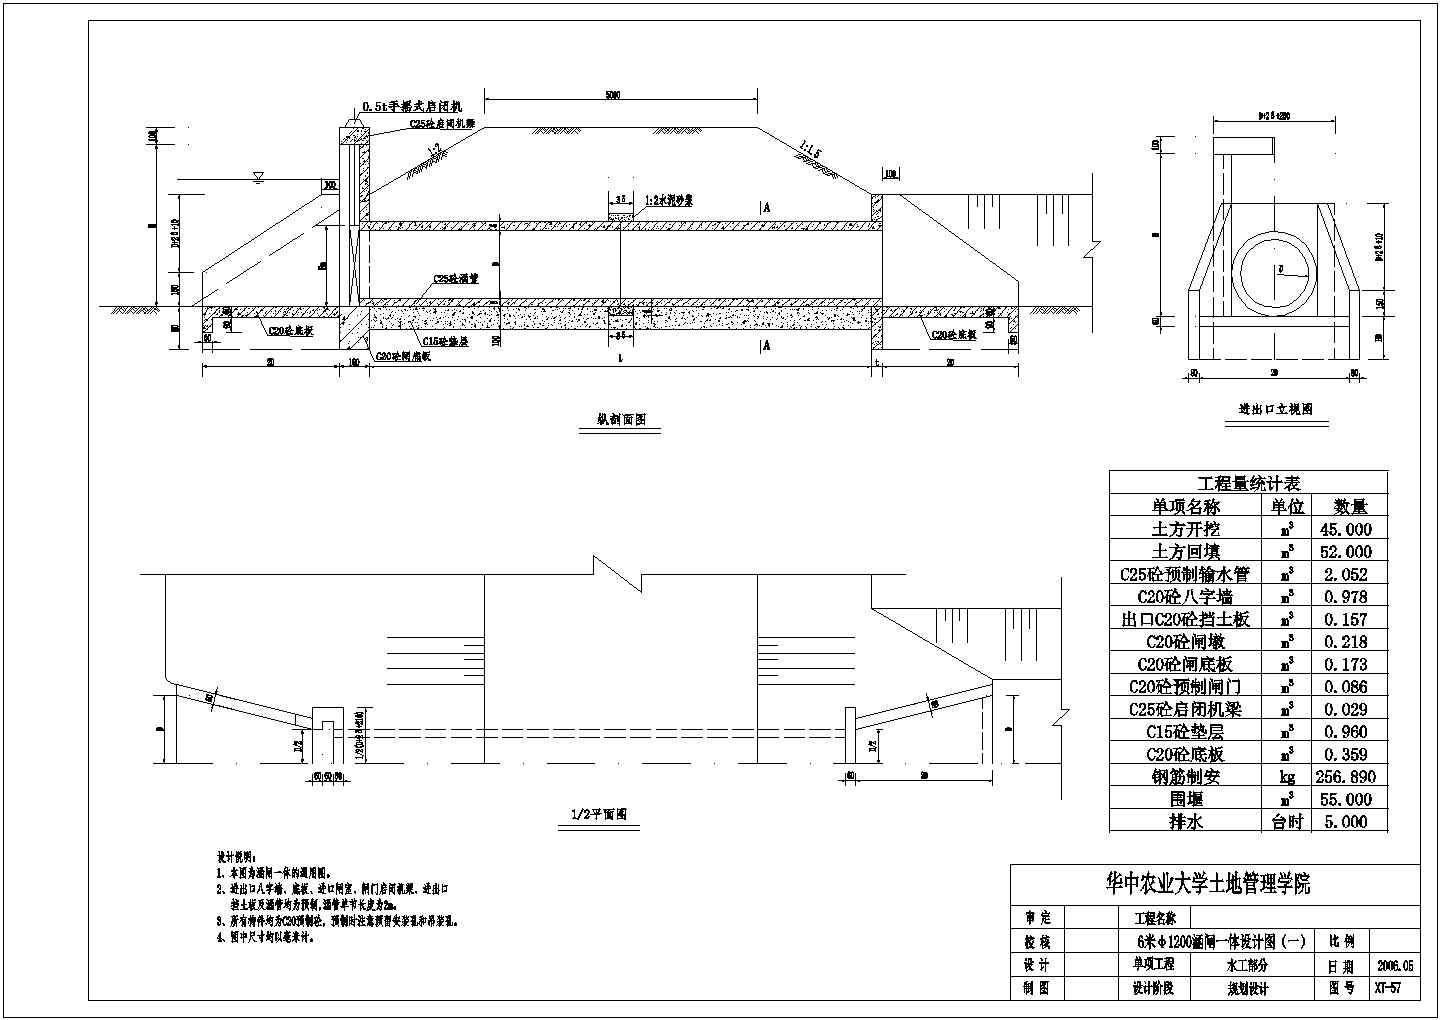 华中农业大学土地管理学院一体式涵闸结构钢筋图